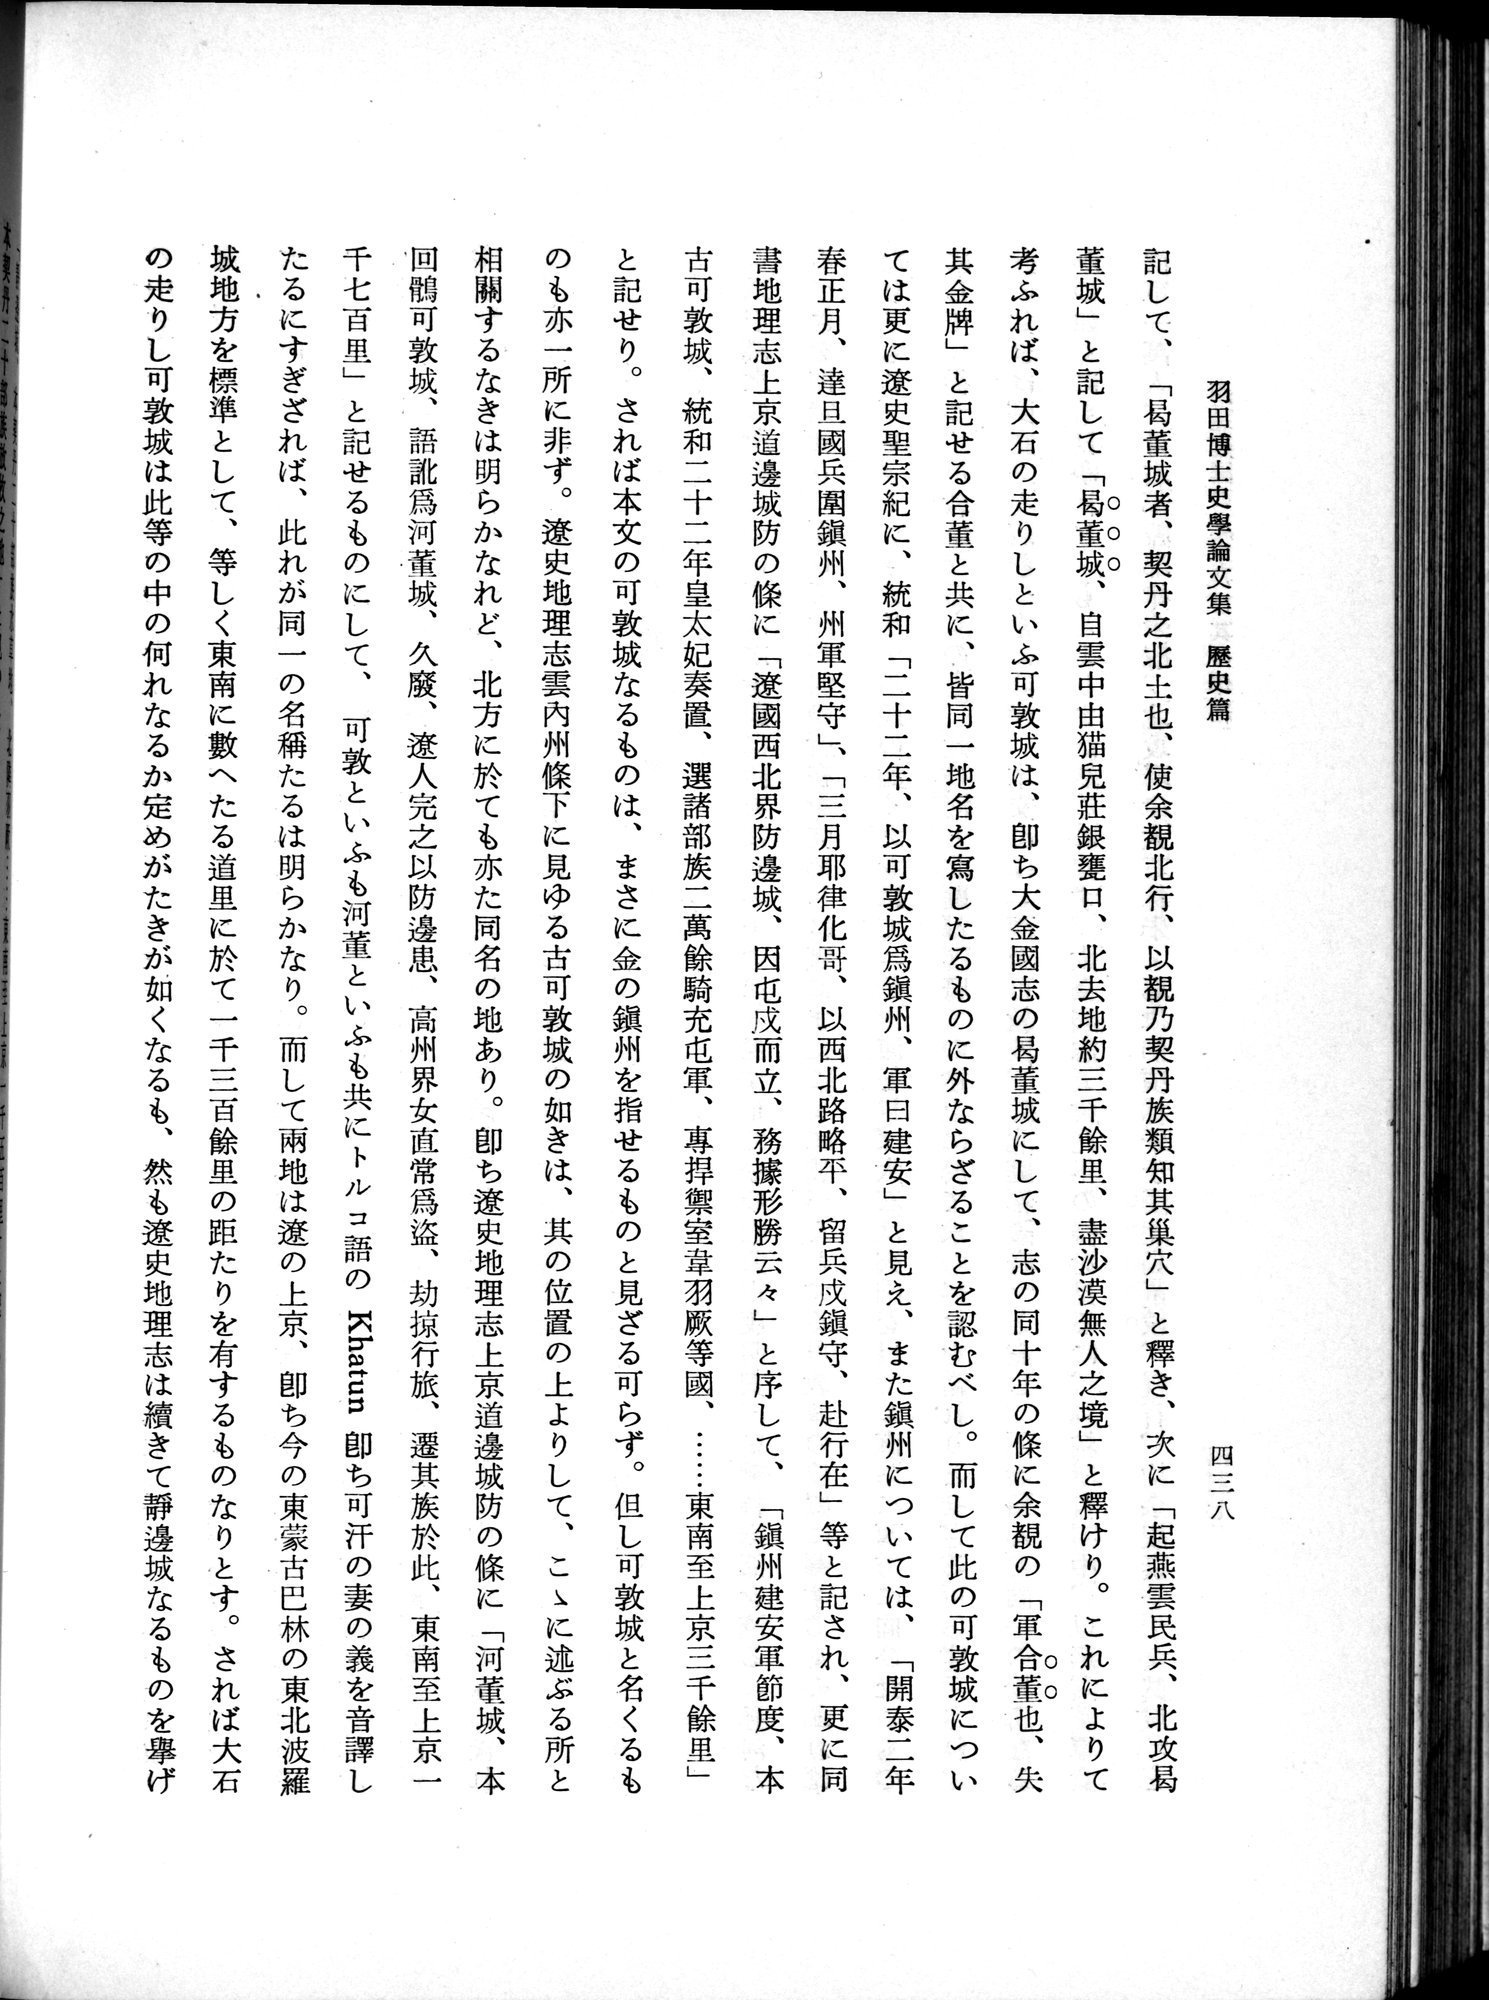 羽田博士史学論文集 : vol.1 / Page 476 (Grayscale High Resolution Image)